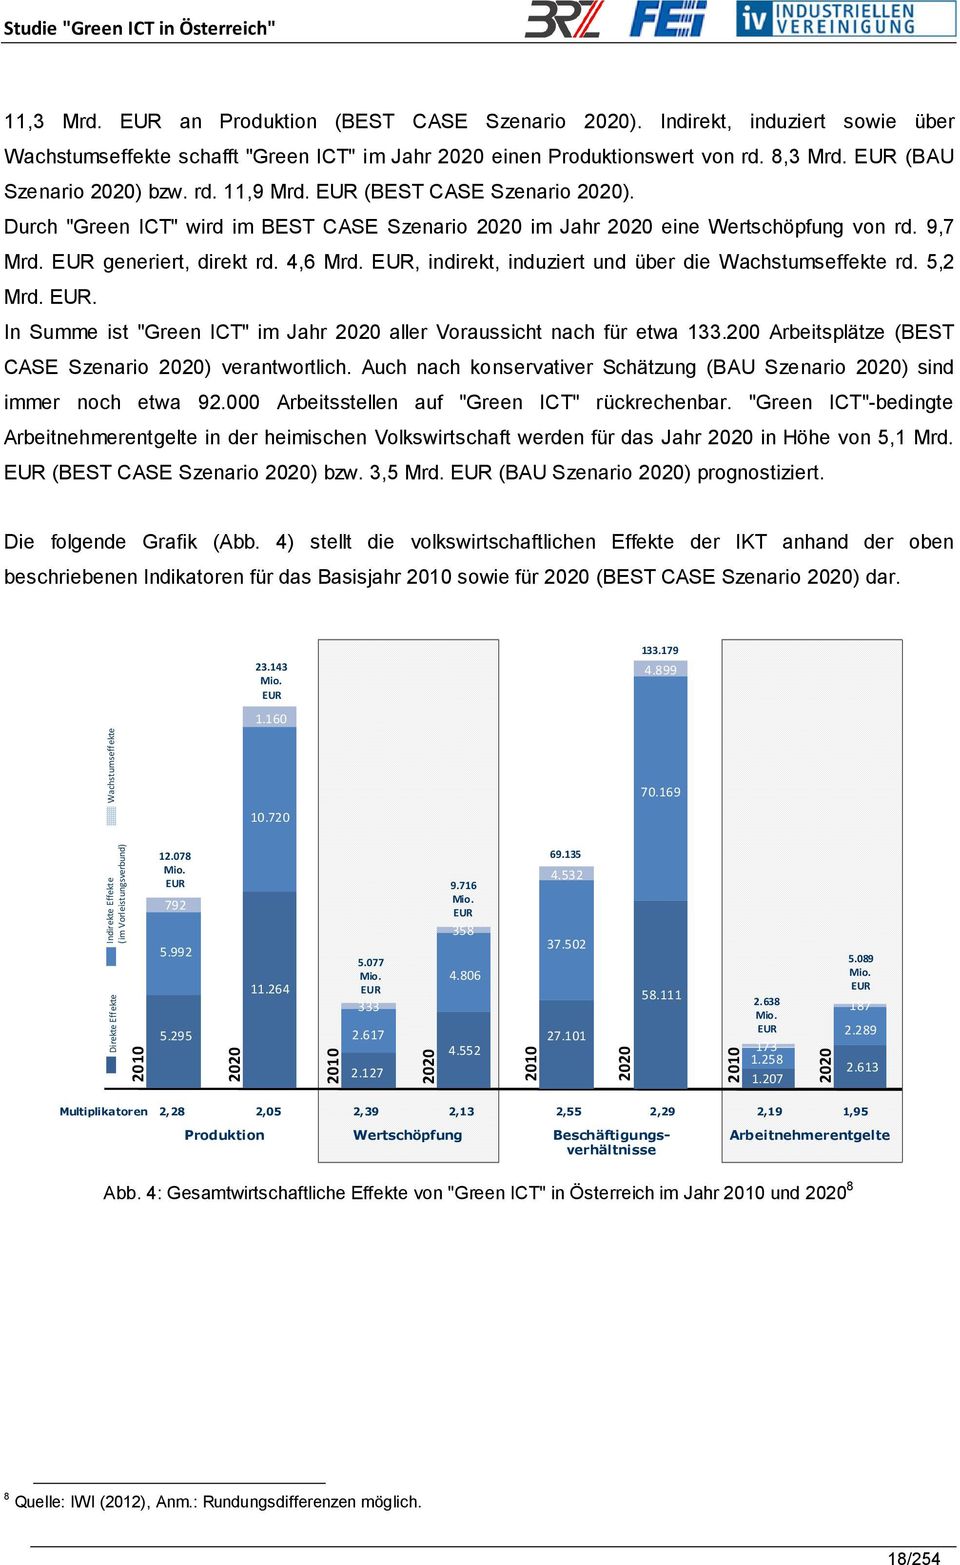 4,6 Mrd. EUR, indirekt, induziert und über die Wachstumseffekte rd. 5,2 Mrd. EUR. In Summe ist "Green ICT" im Jahr 2020 aller Voraussicht nach für etwa 133.